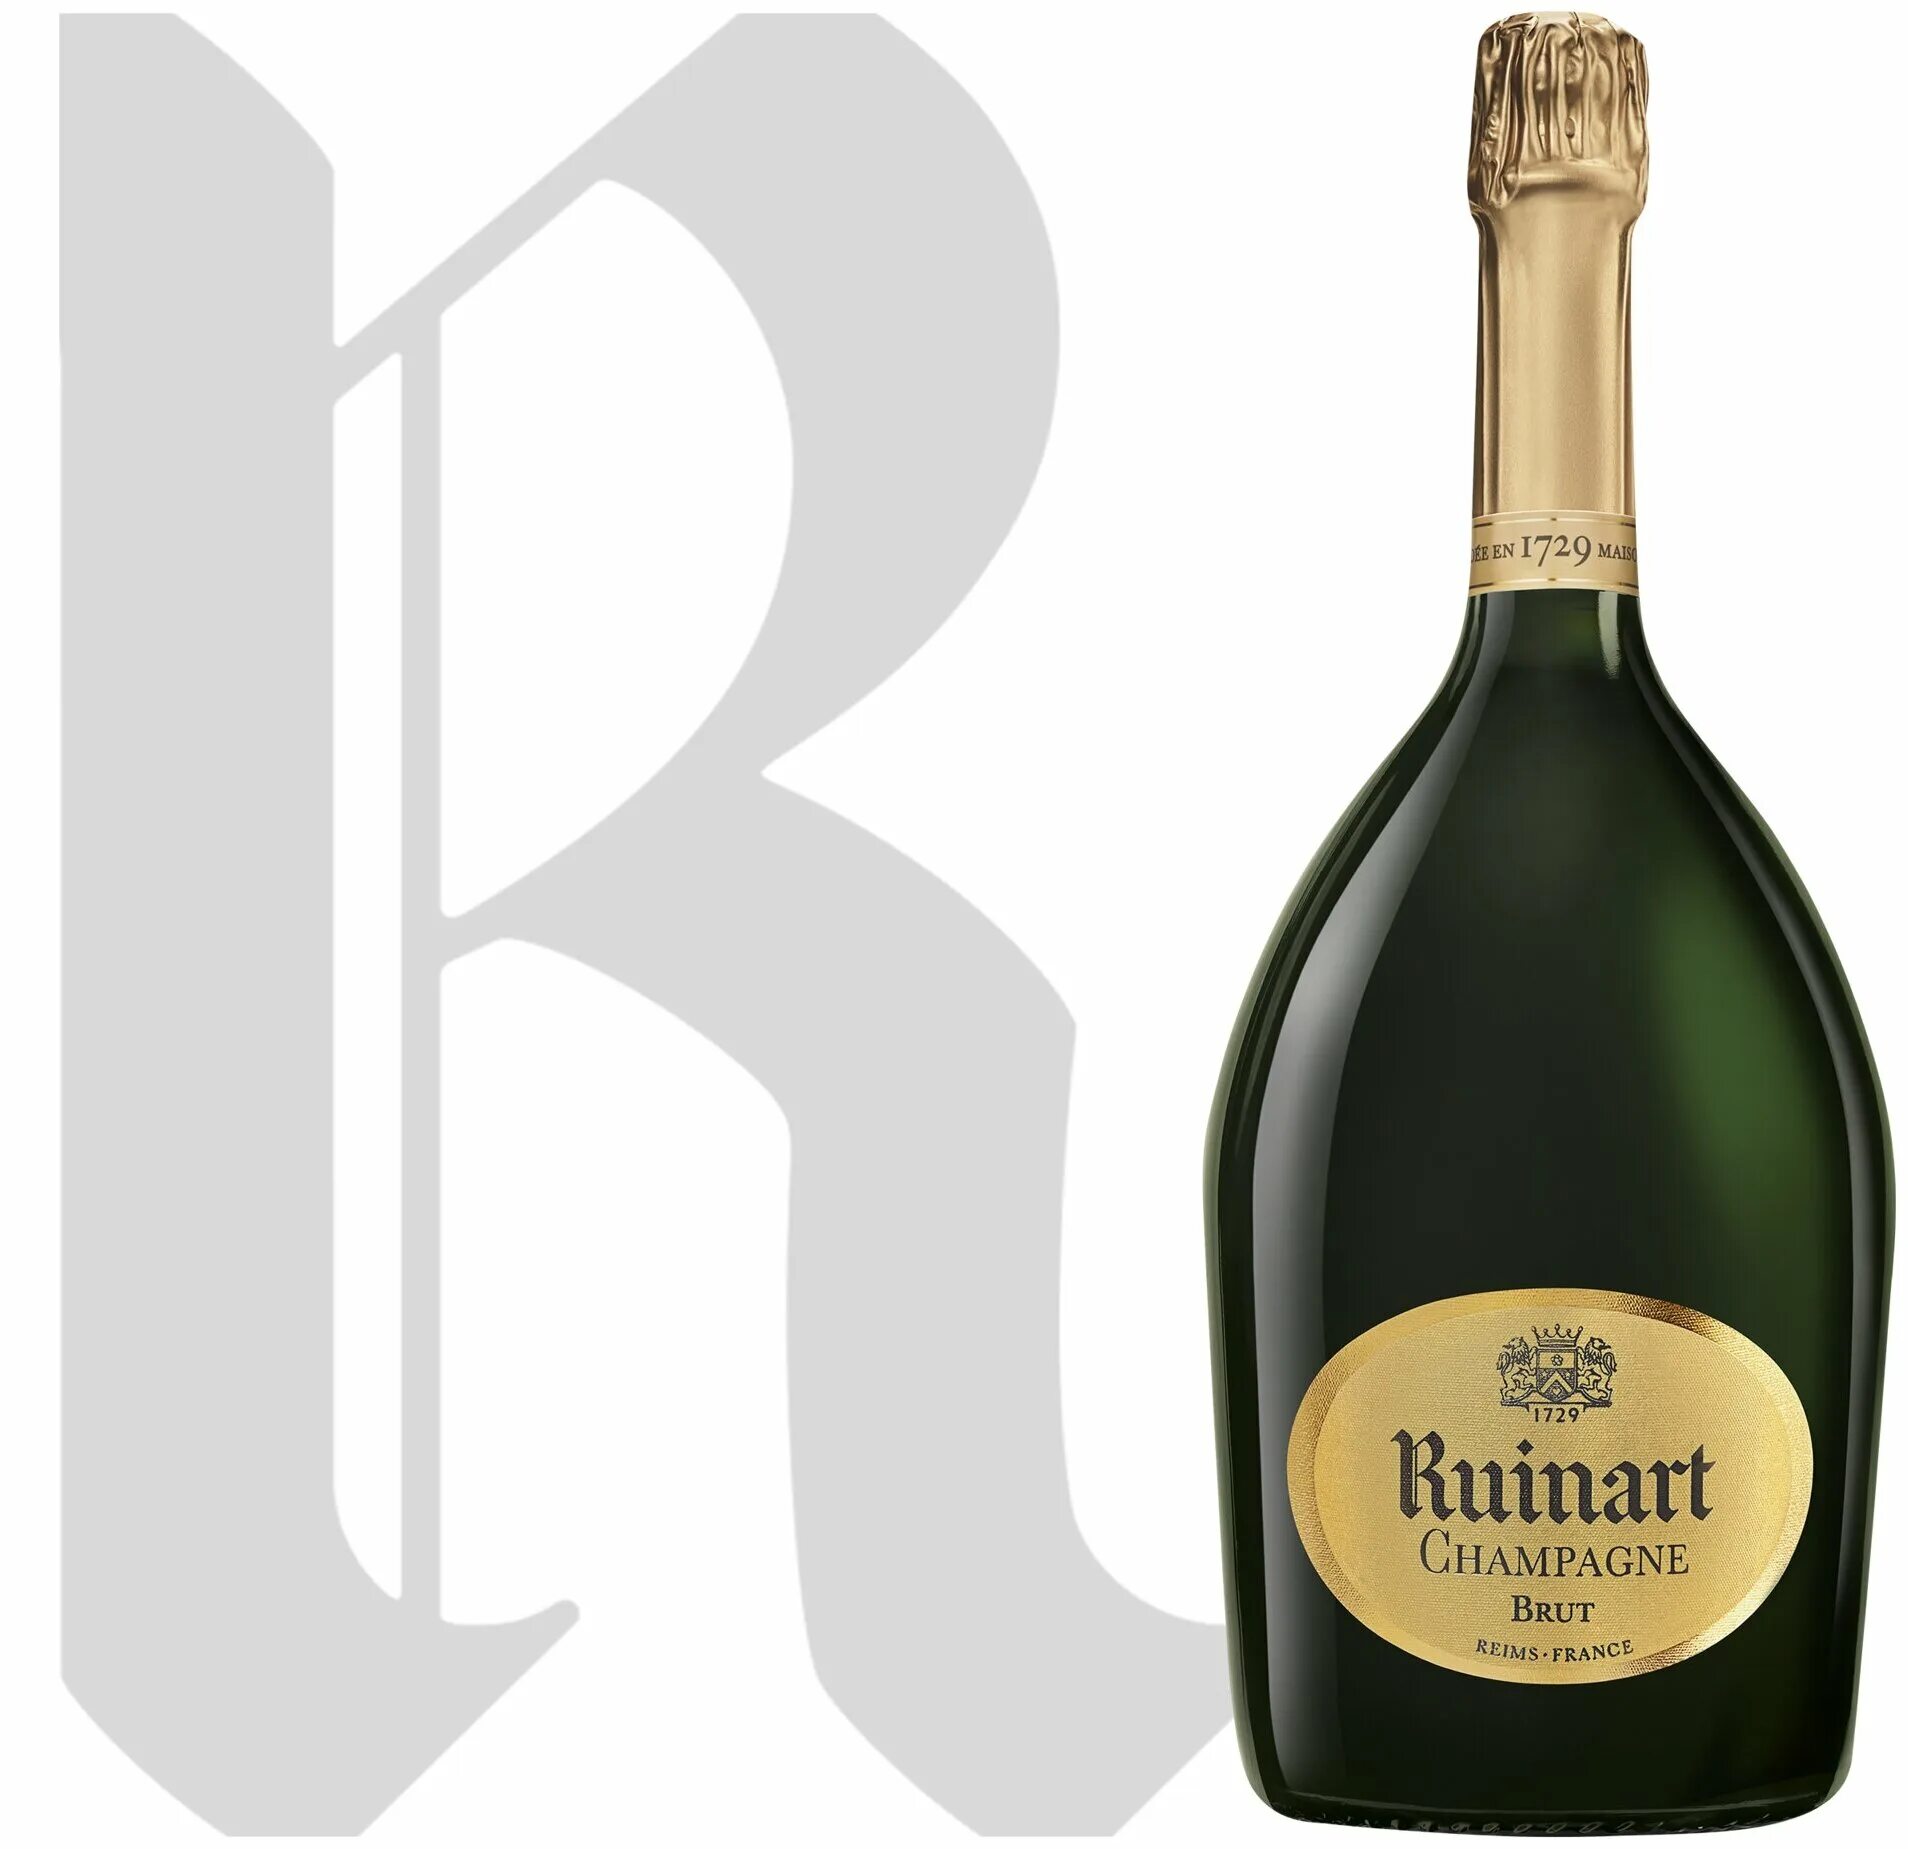 Champagne brut цена. Шампанское r de Ruinart Brut 0.75 л. Ruinart Champagne Brut 1729. Р де Рюинар брют 0.75. Ruinart шампанское Champagne Brut.